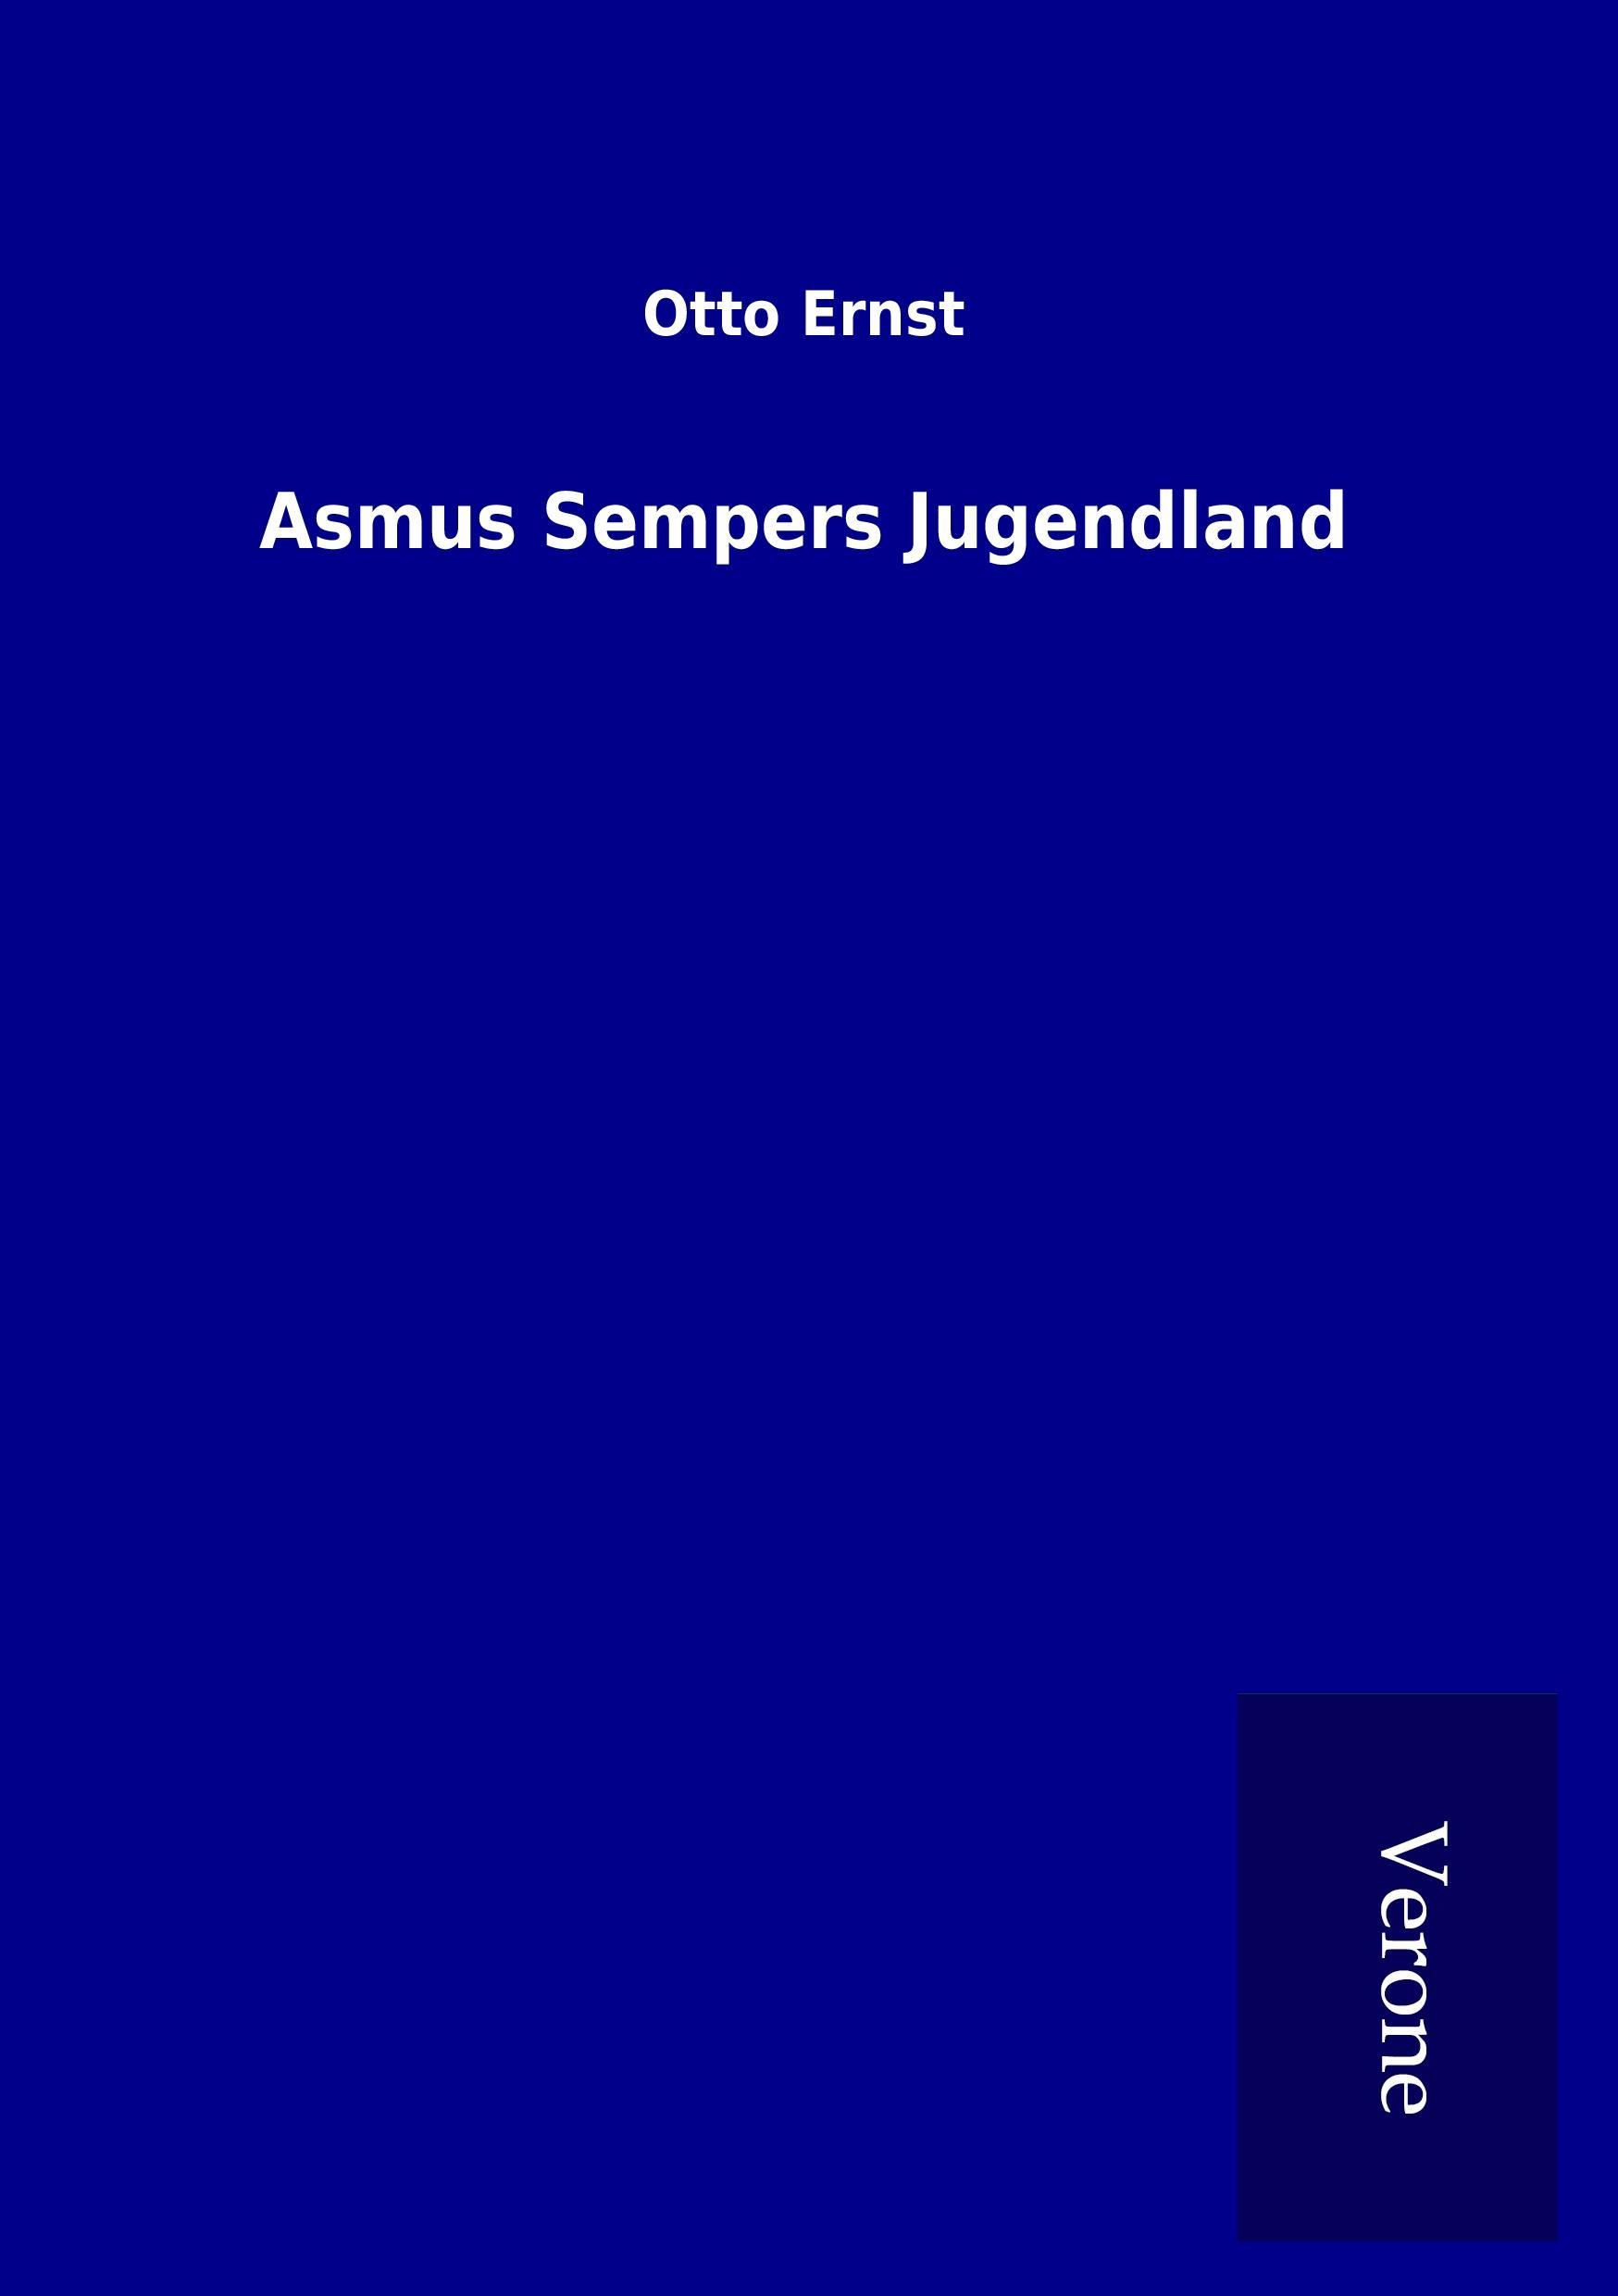 Asmus Sempers Jugendland - Ernst, Otto